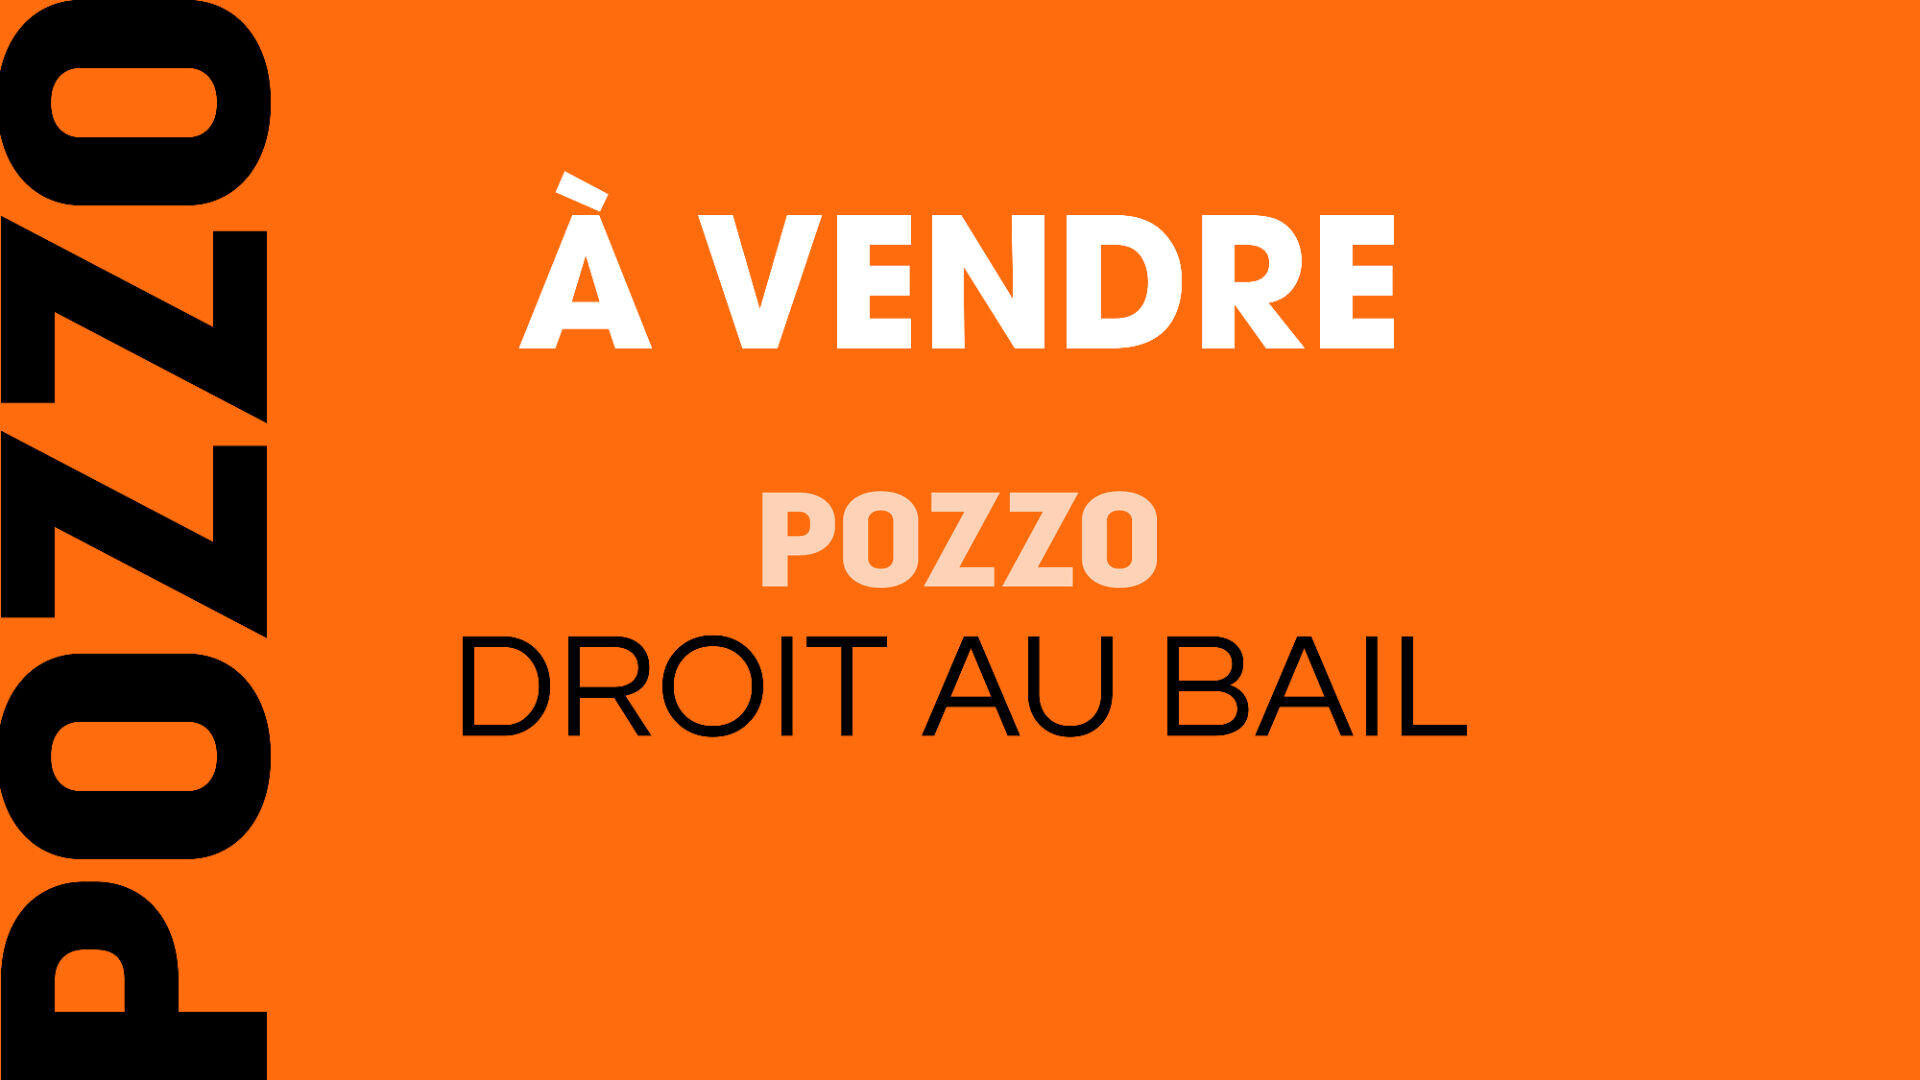 A vendre droit au bail local 60m² à Deauville (14)